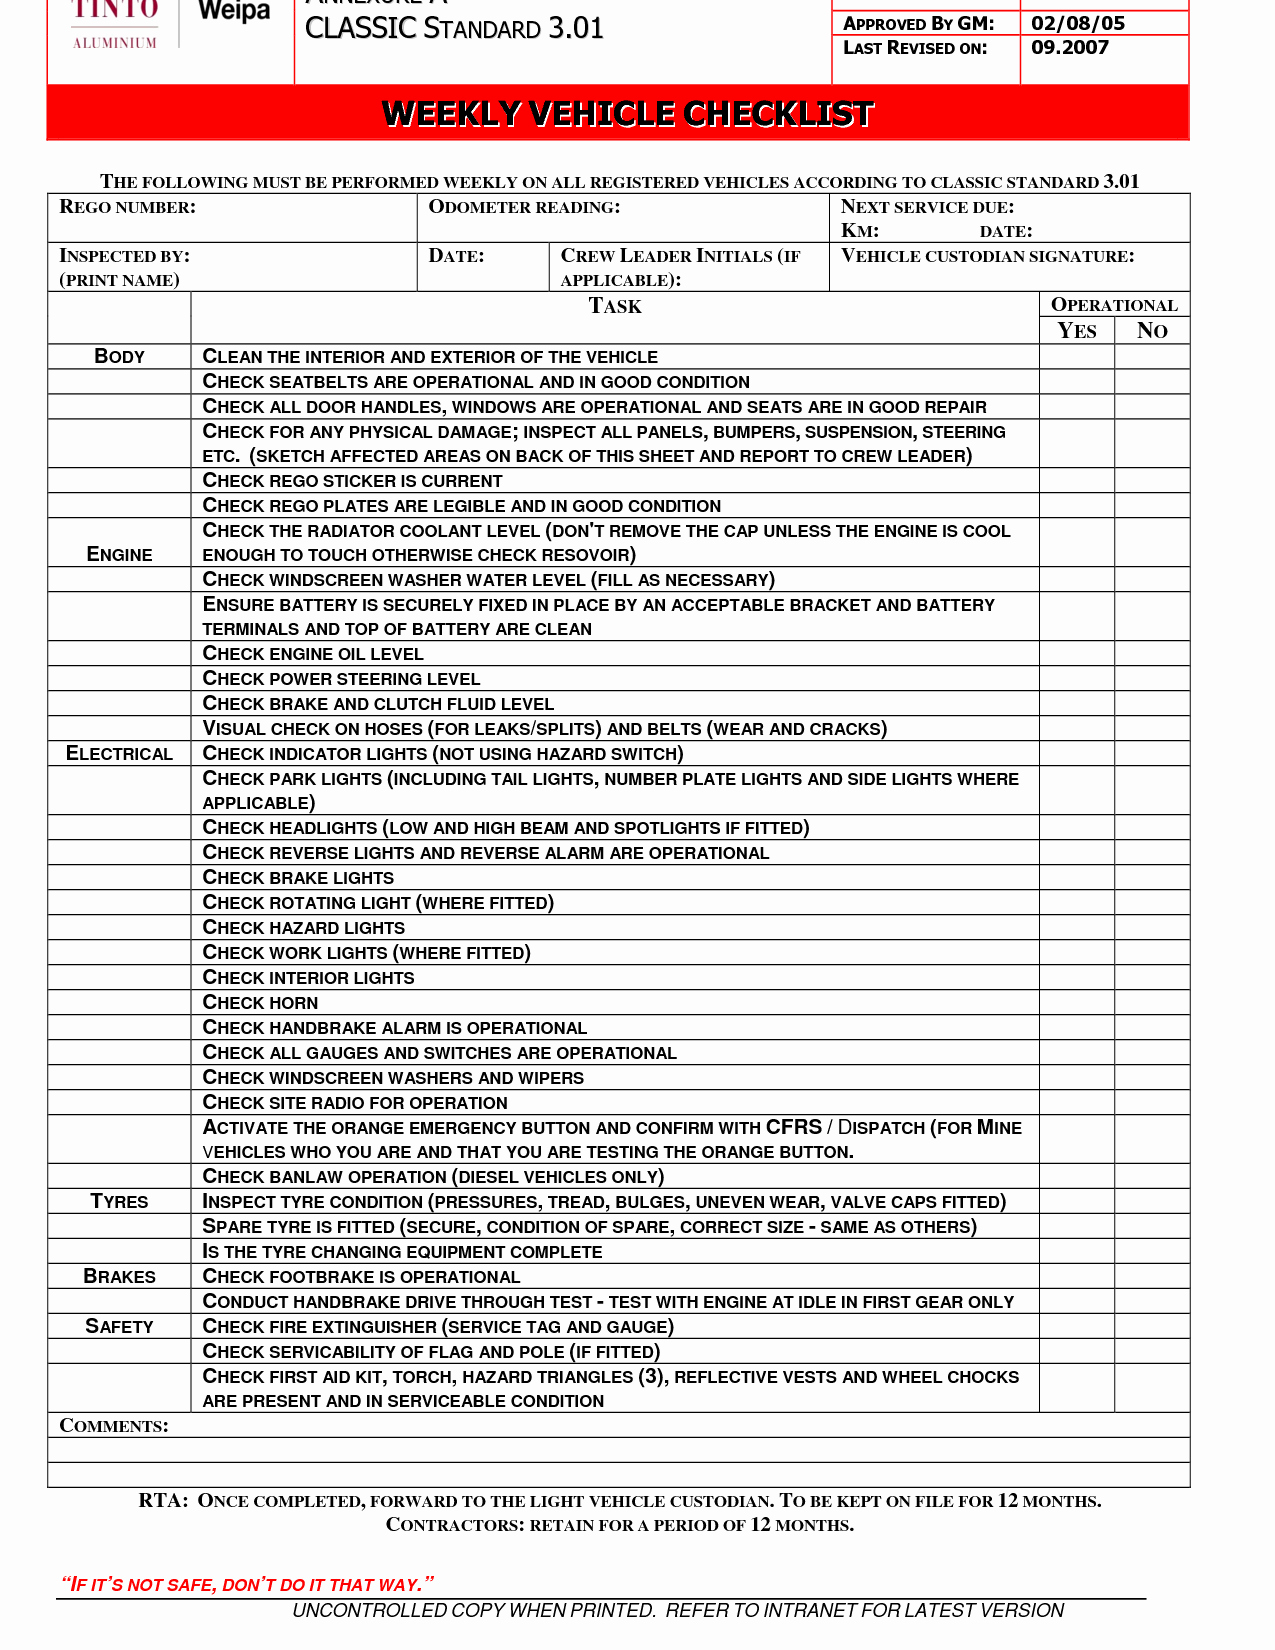 Vehicle Maintenance Schedule Template Unique Vehicle Maintenance Checklist Template Ewolf